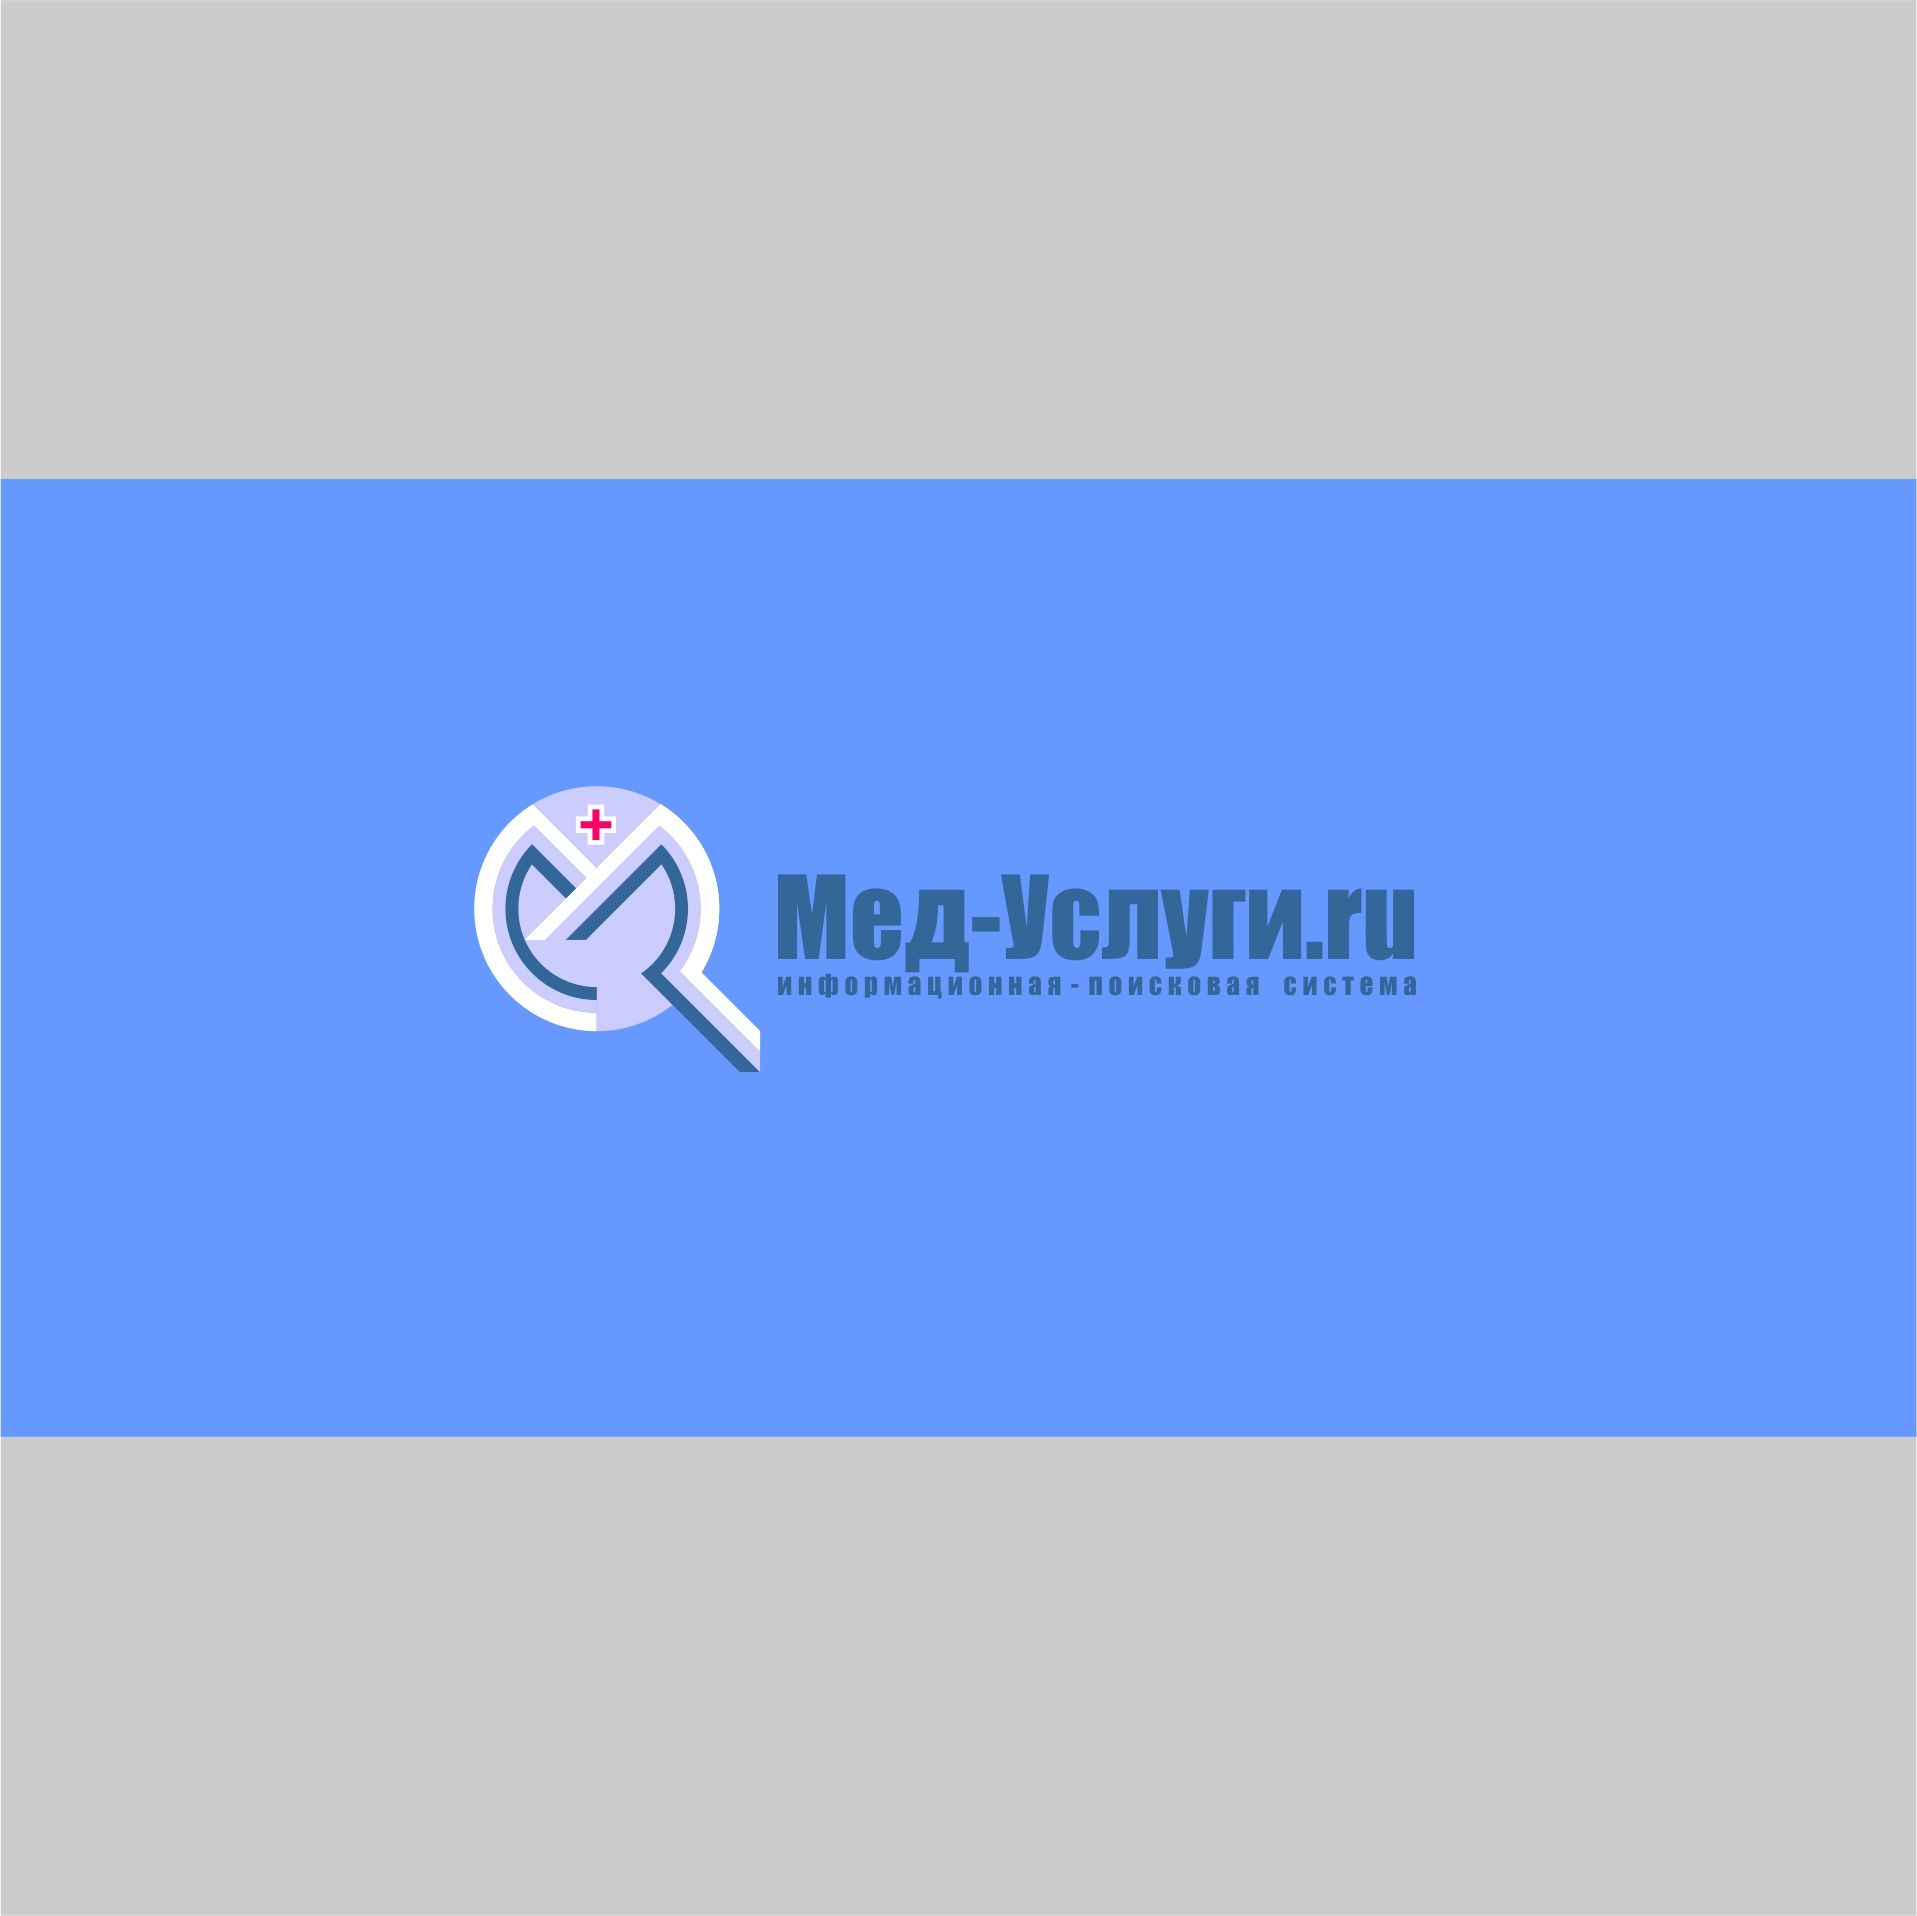 Логотип для Мед Услуги .ru  Информационно-Поисковая система - дизайнер AnatoliyInvito